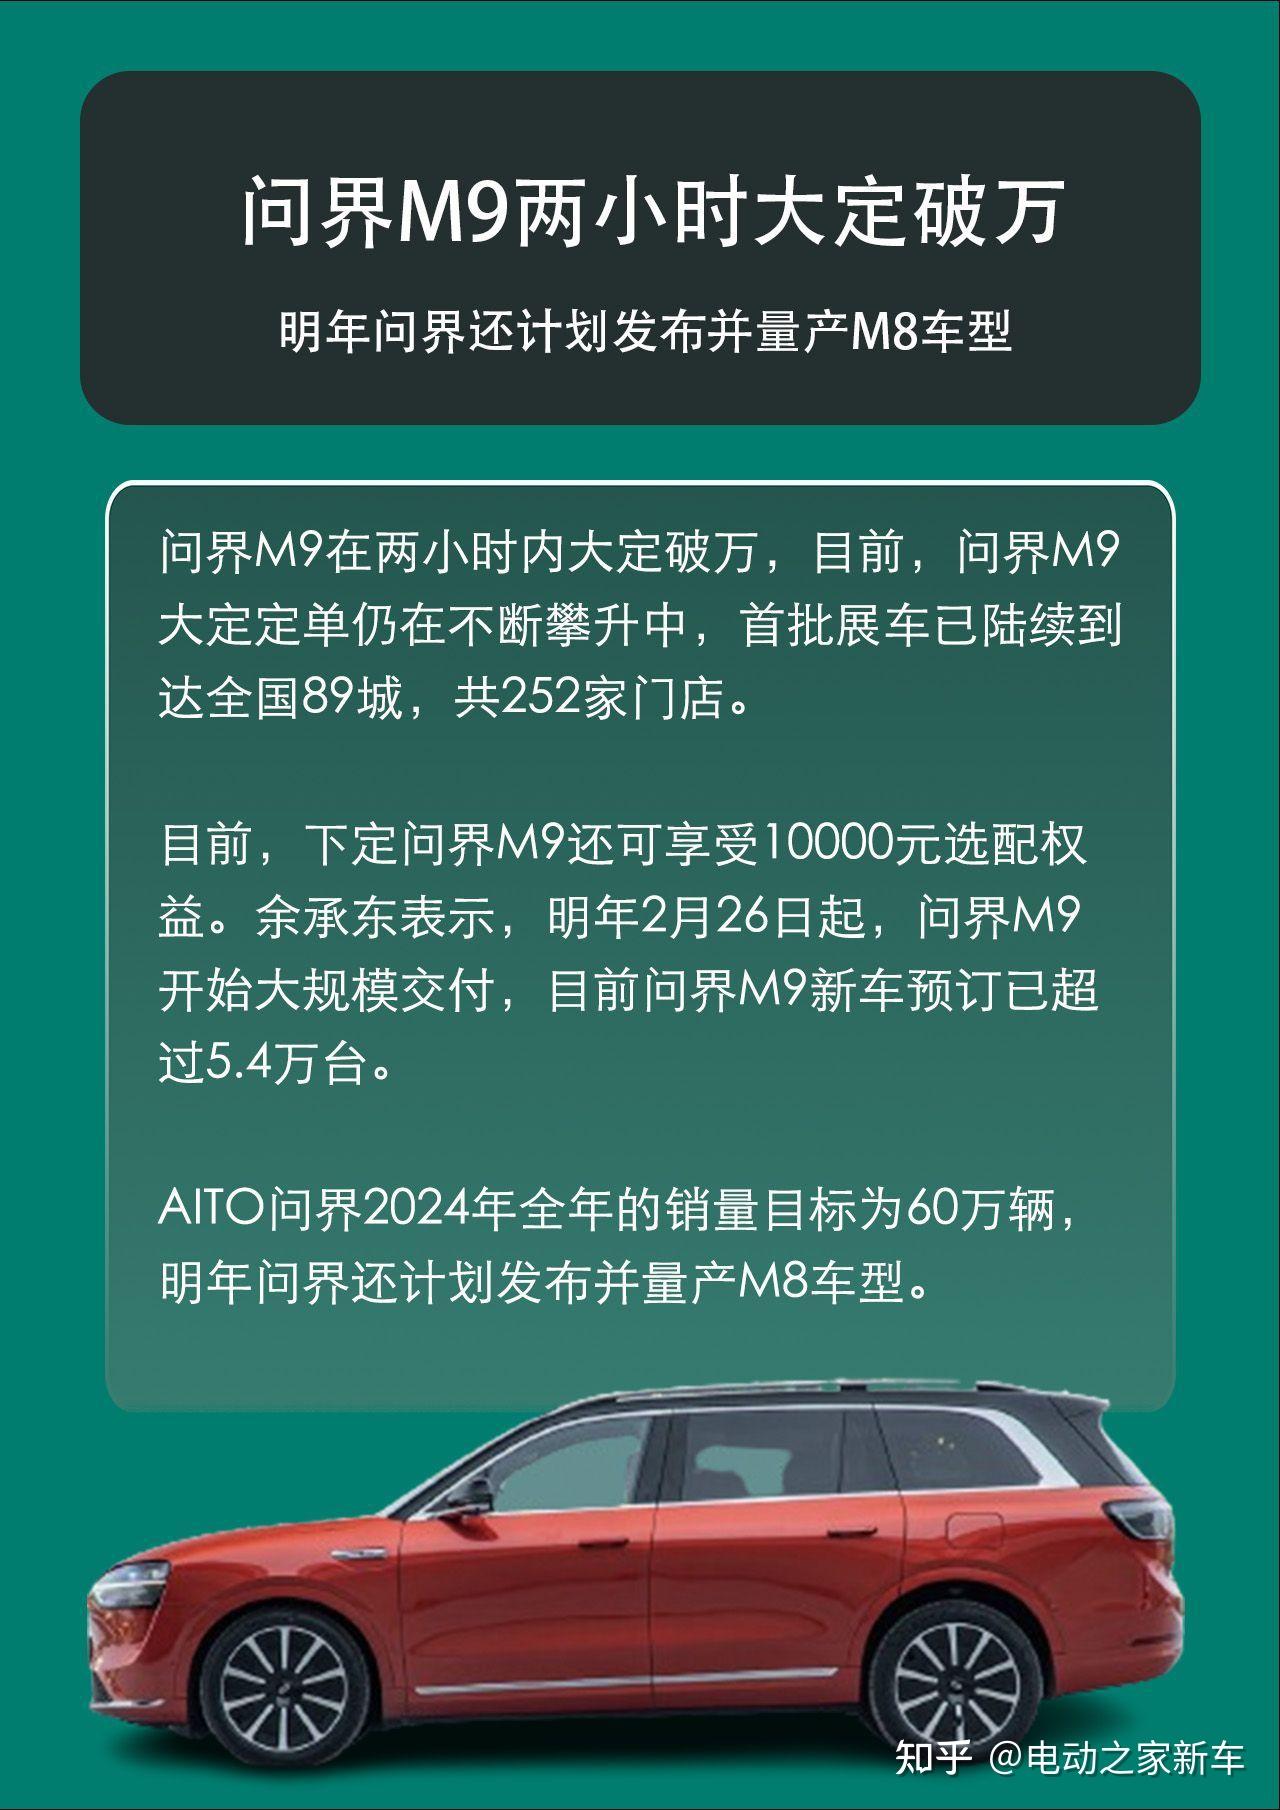 【问界M9】新AITO问界M9报价_问界M9图片_太平洋汽车